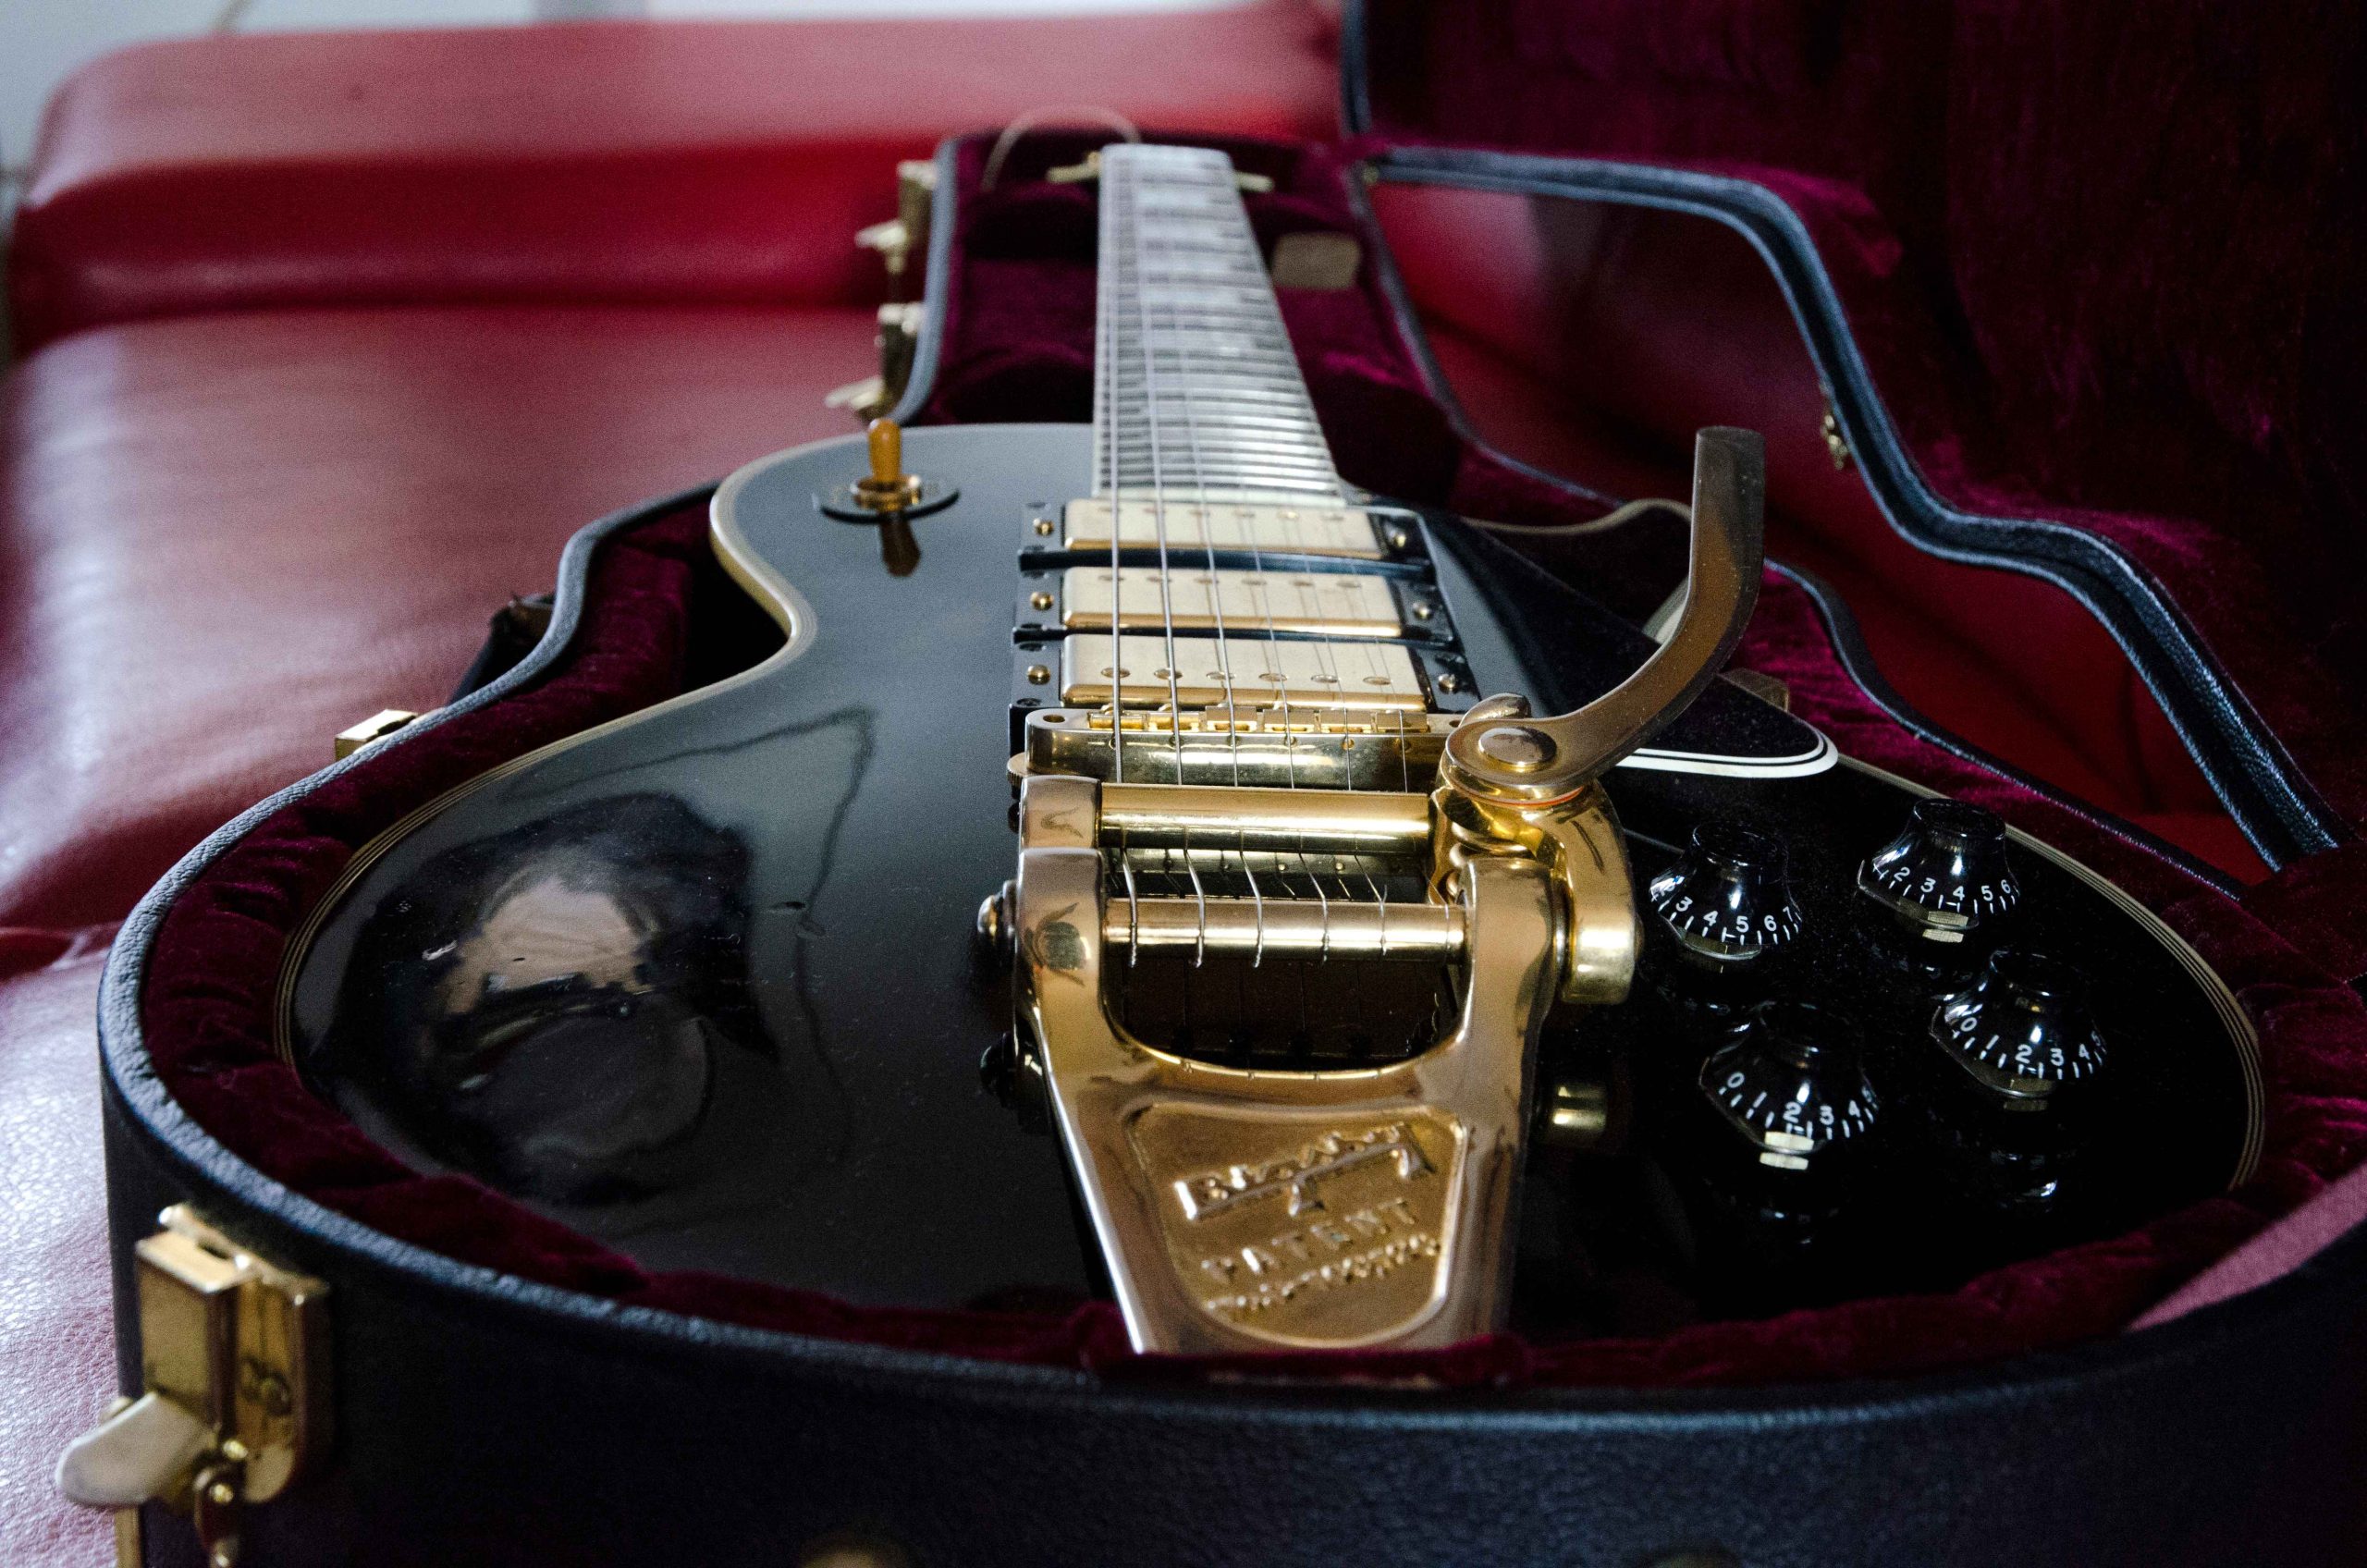 Gibson Les Paul Reissue 57’ Custom shop 3pick-up Bigsby - Ezt a hangszert egyszerűen csak Black Beautynak hívják , Jimmy Page használt ilyet a Led Zeppelinben, ez annak az újrakiadása, mindent az eredeti 1957es mintájára készítettek nagy odafigyeléssel a Gibson custom shop részlegén. Ára: 7 ezer euró.